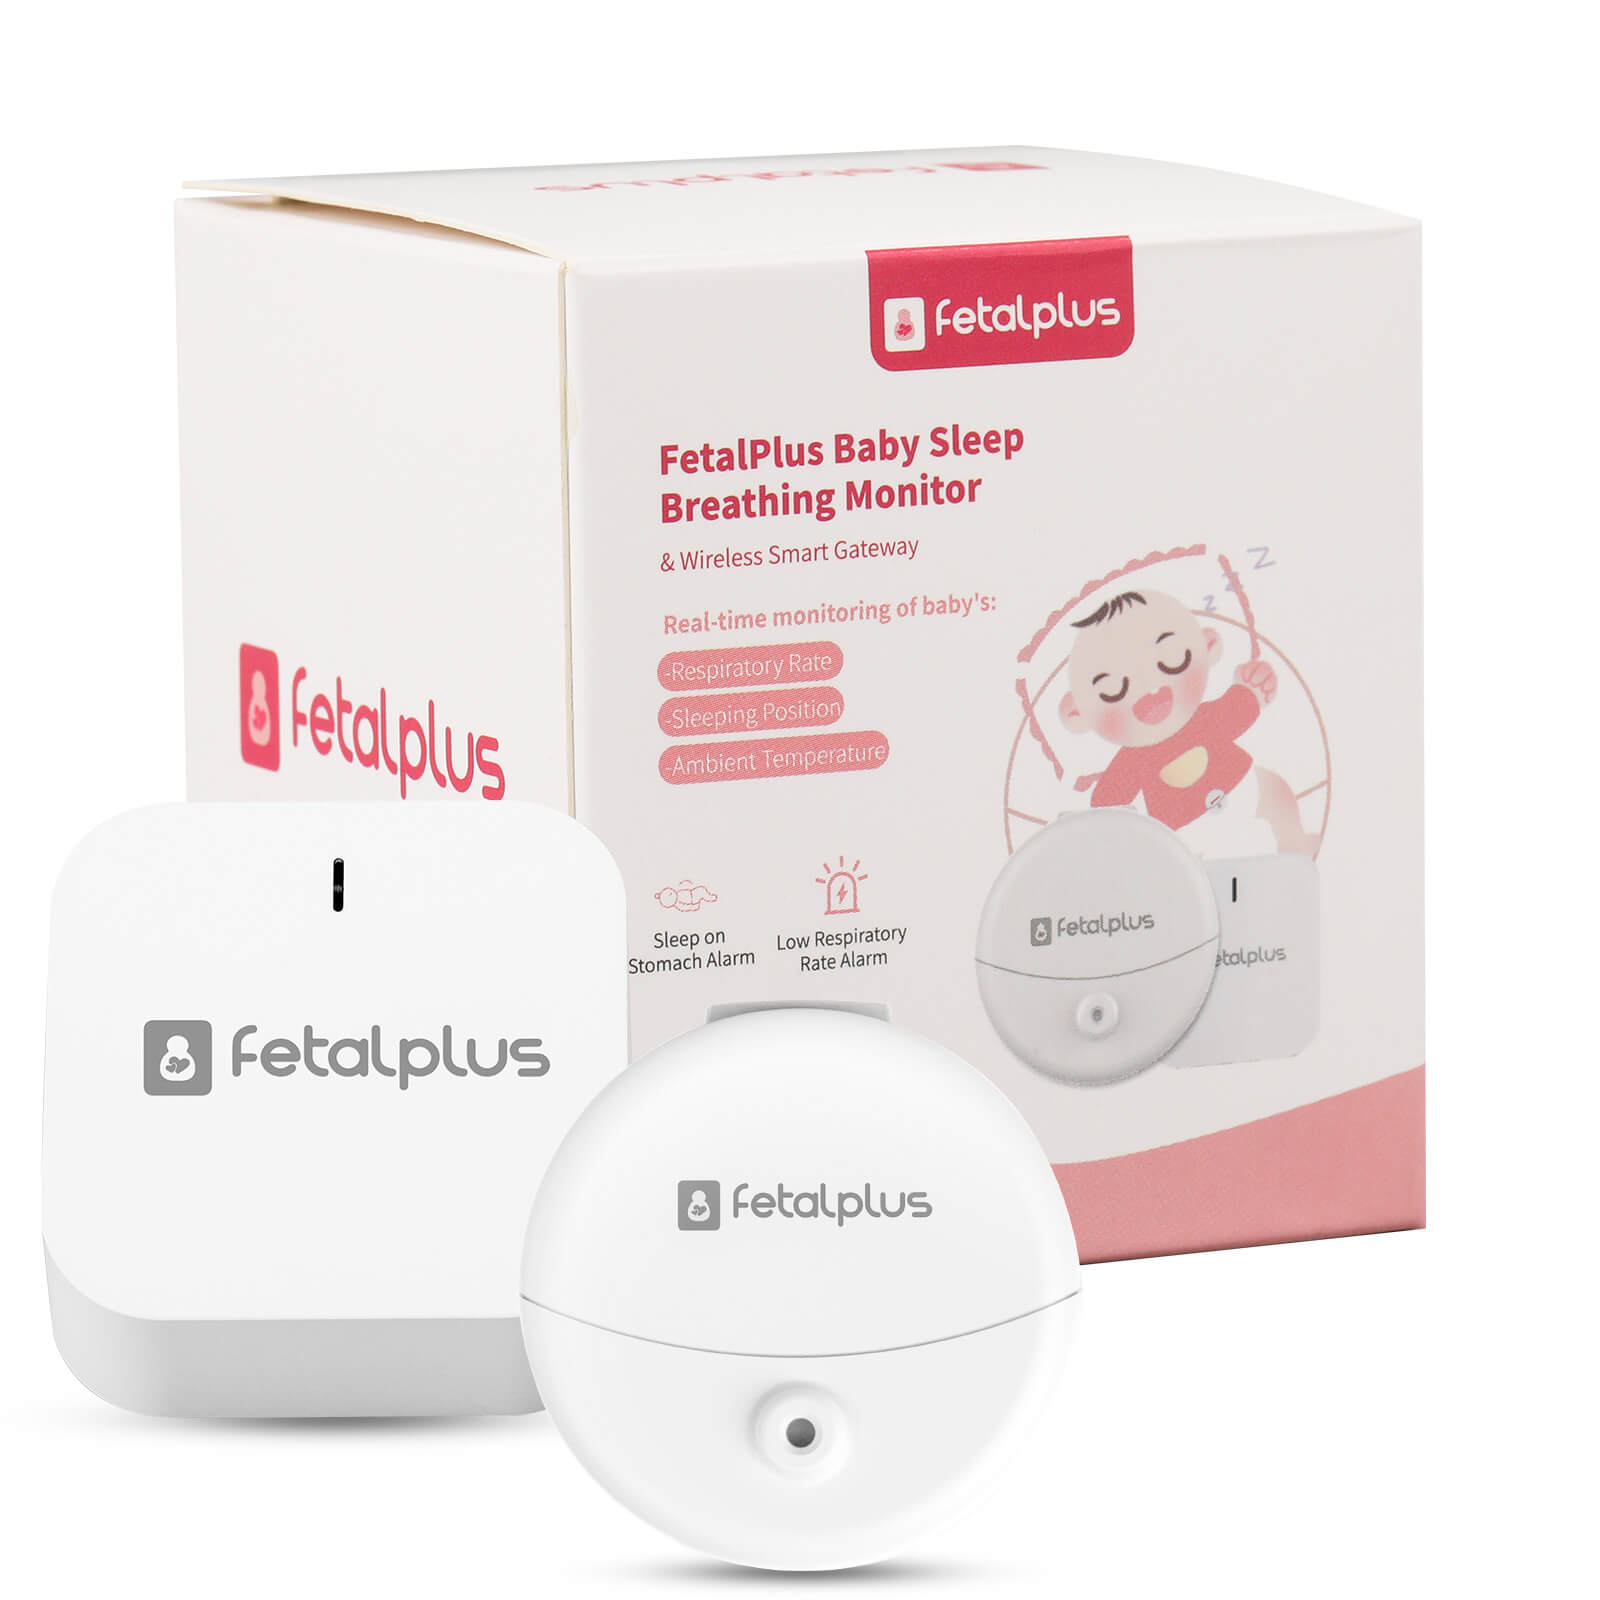 FetalPlus Baby Sleep Breathing Monitor & Wireless Smart Gateway – fetalplus